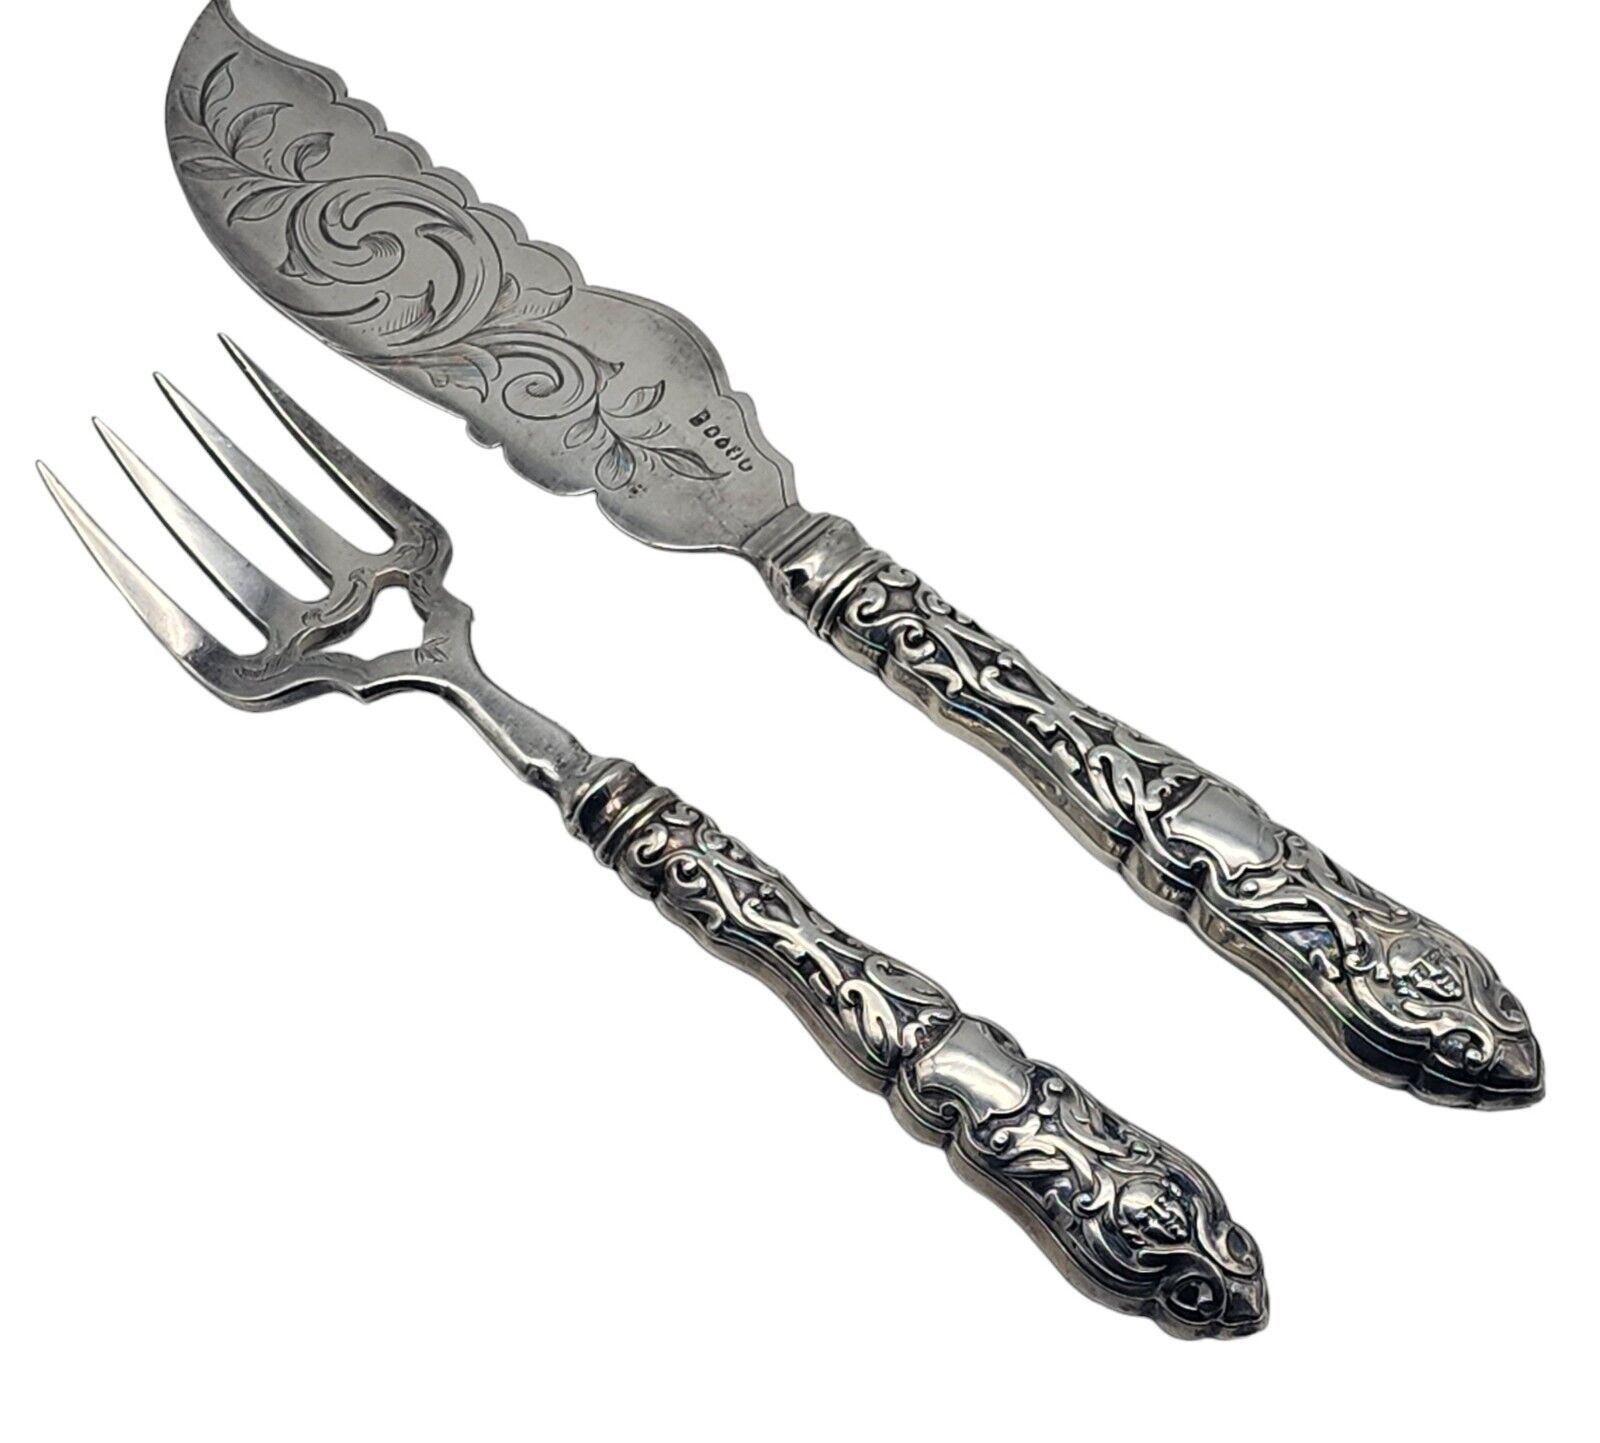 VINTAGE Sterling Silver Handled Fish Serving Fork & Knife Set NO MONOGRAM